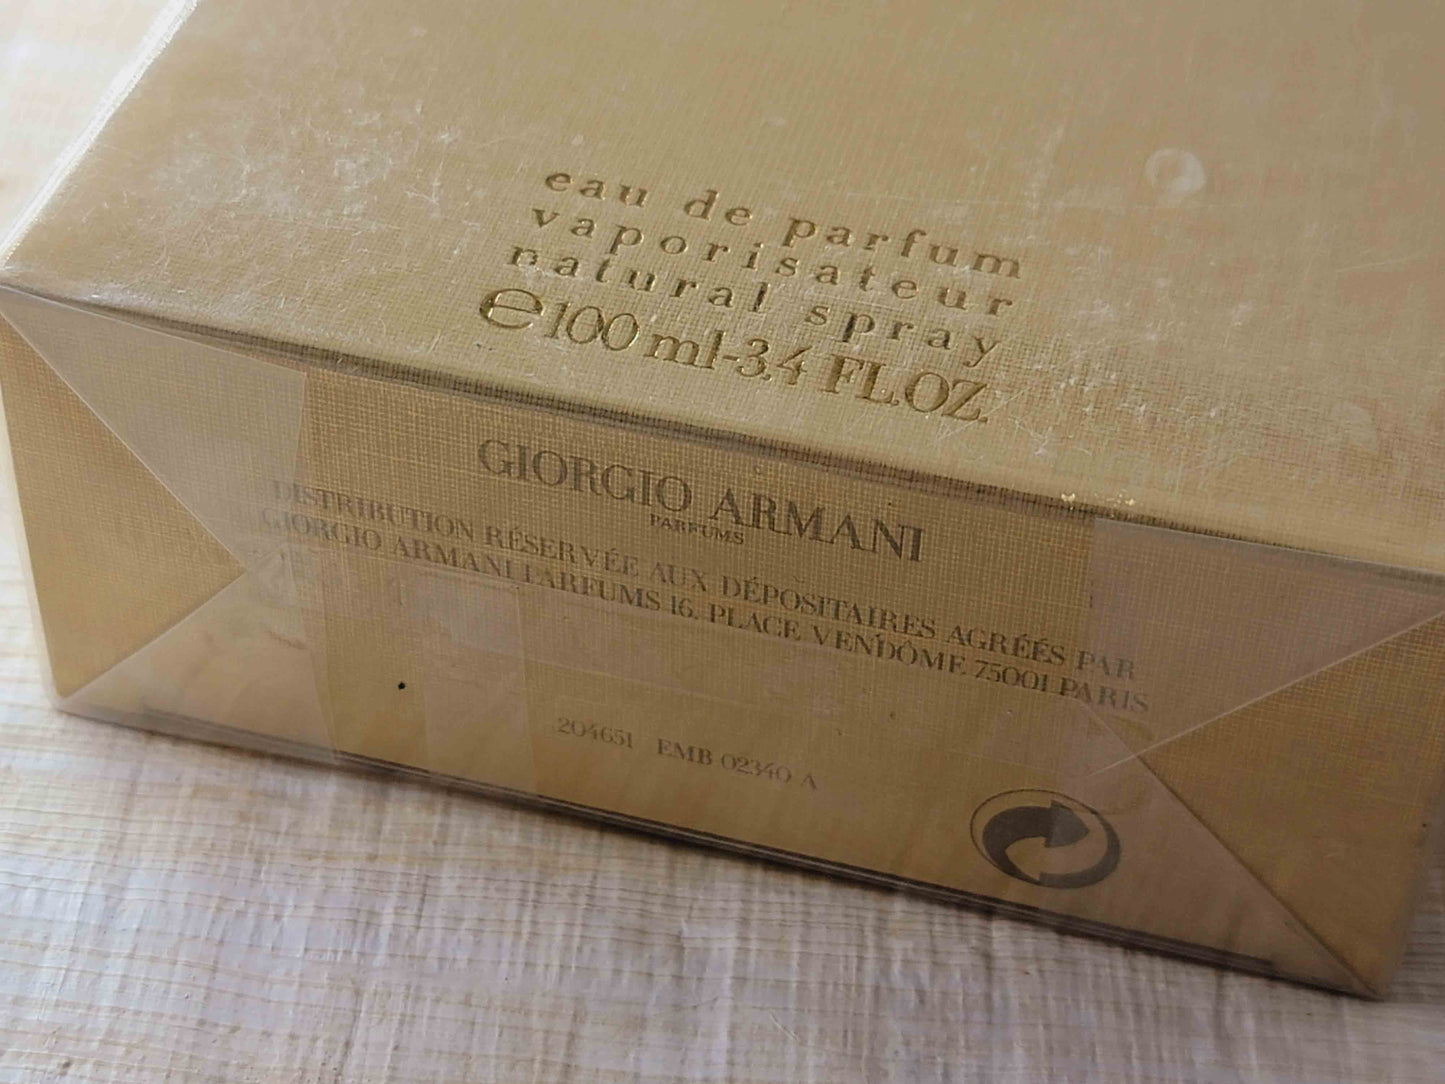 Giorgio Armani Sensi EDP Spray 100 ml 3.4 oz Or 50 ml 1.7 oz, Vintage